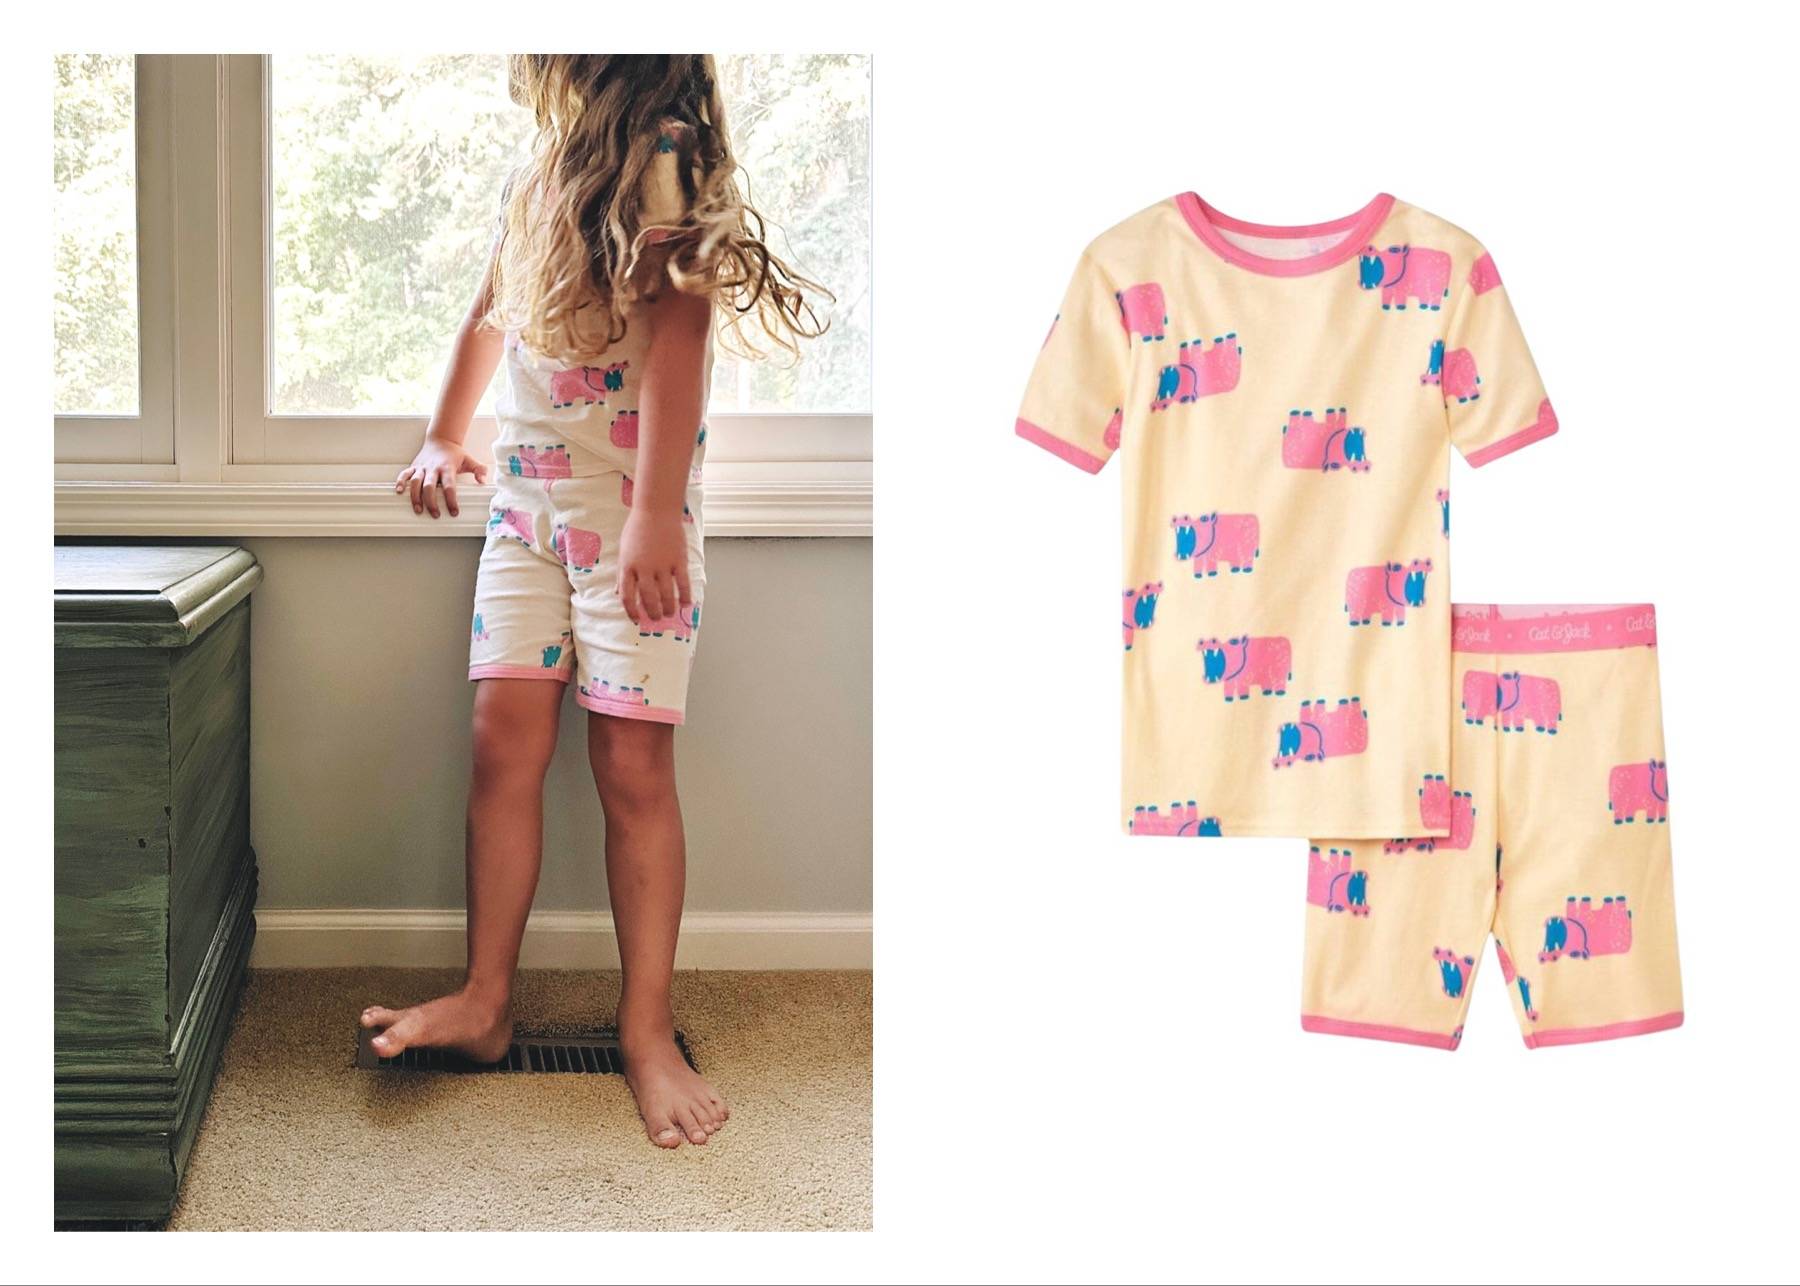 Girl wearing hippo pajamas next to a stock photo of hippo pajamas.